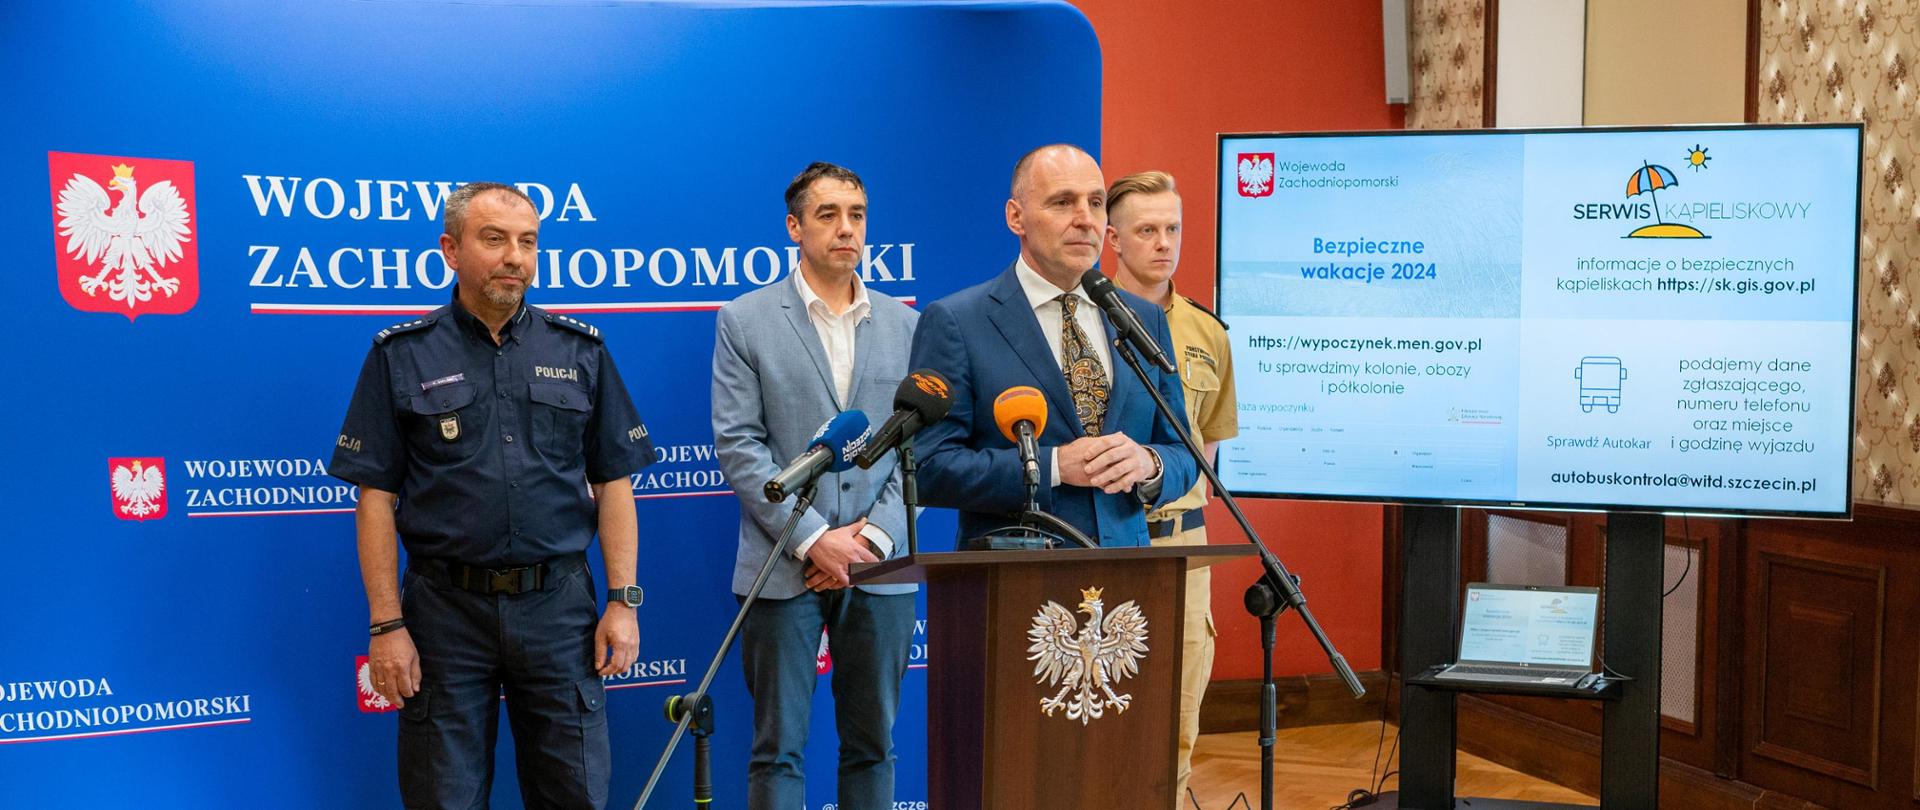 briefing prasowy wojewody i przedstawicieli Policji Państwowej Straży Pożarnej oraz Wojewódzkiego Ochotniczego Pogotowia Ratunkowego 